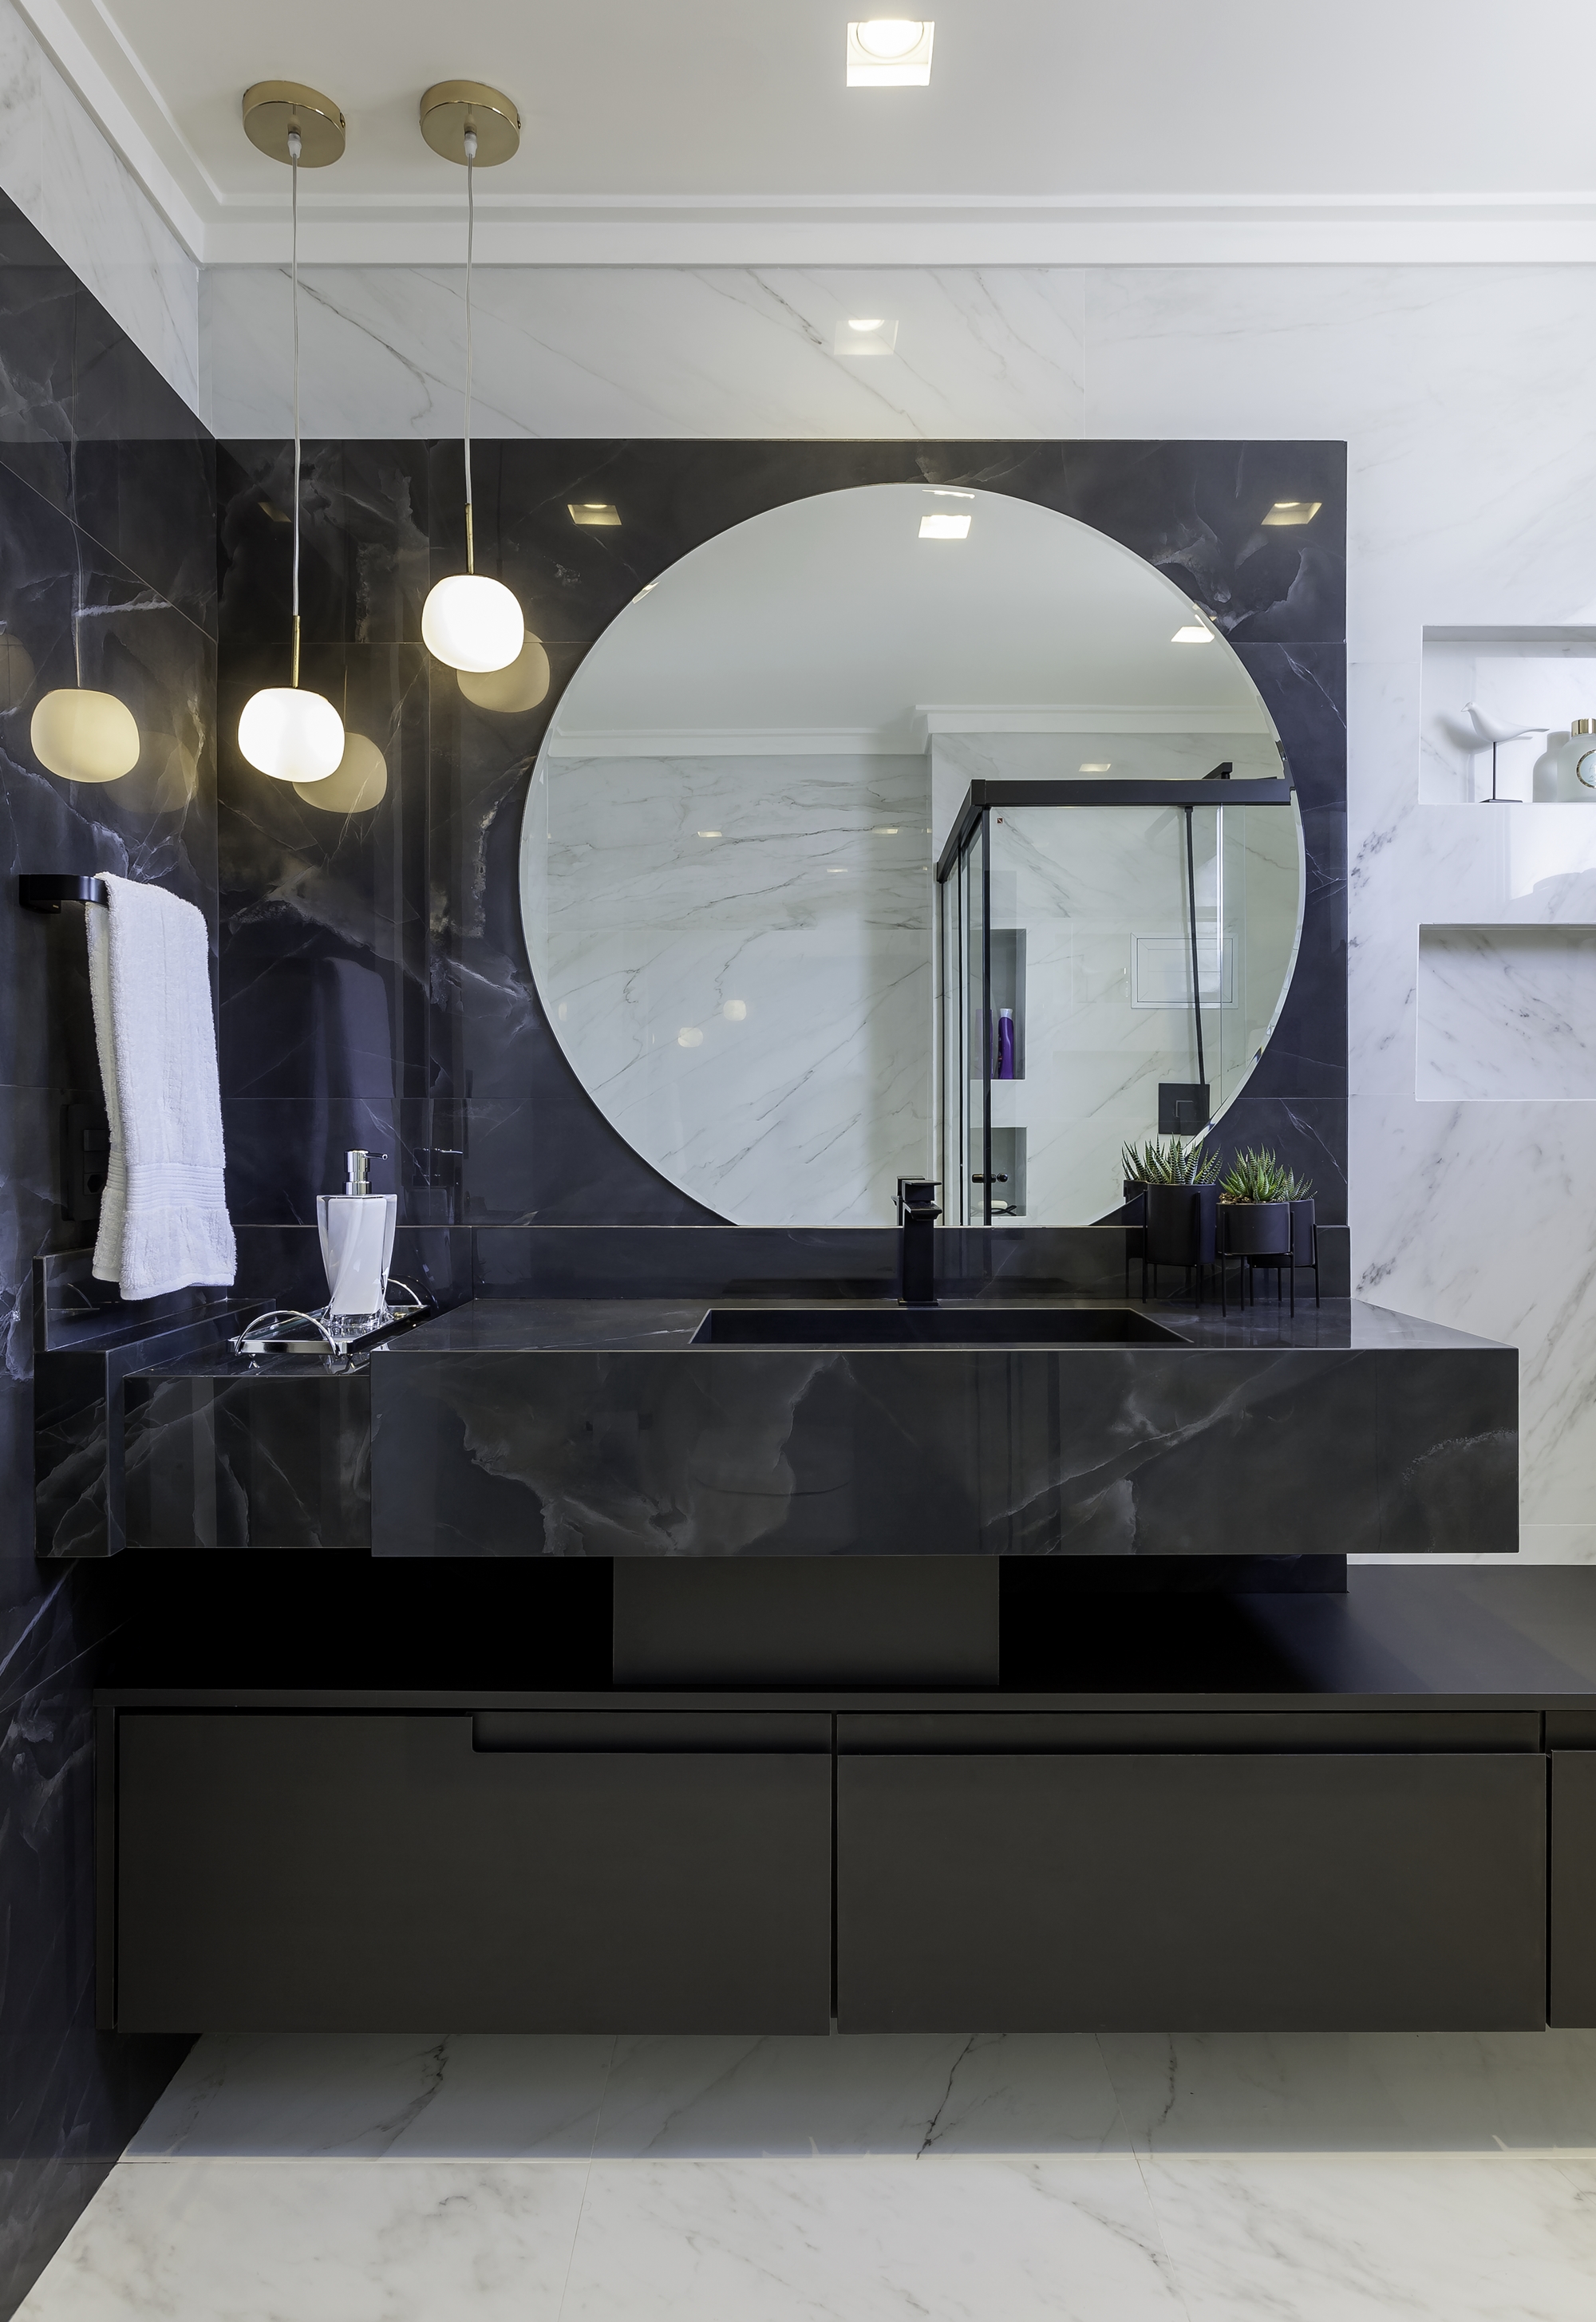 Banheiro com decoração com personalidade com mármore preto aplicado na parede da pia e pia, revestimento branco  aplicado nas demais paredes, piso porcelanato branco e armários em tom grafite